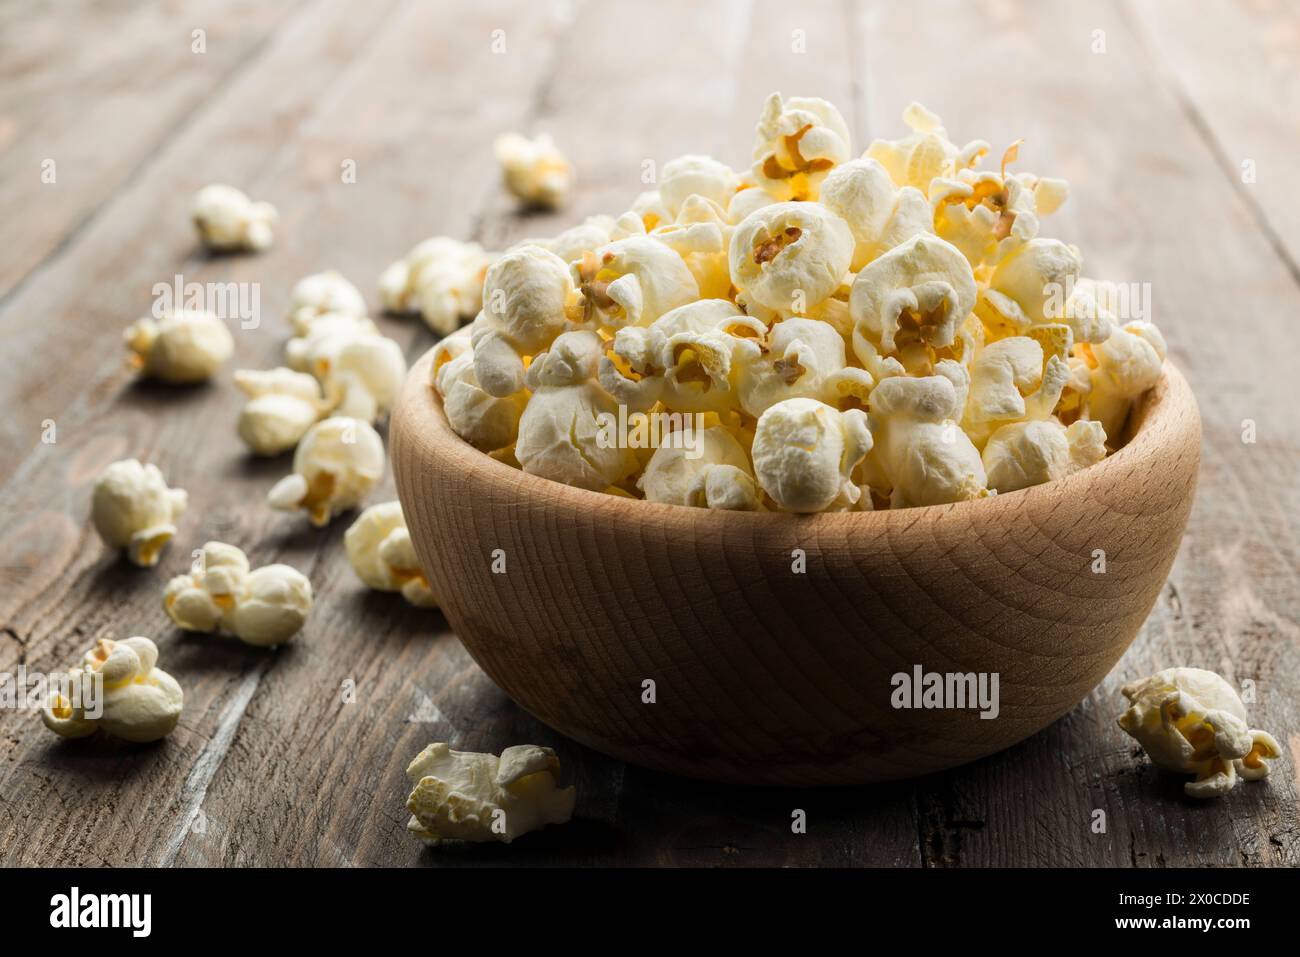 Holzschale mit gesalzenem Popcorn auf Holztisch. Stockfoto